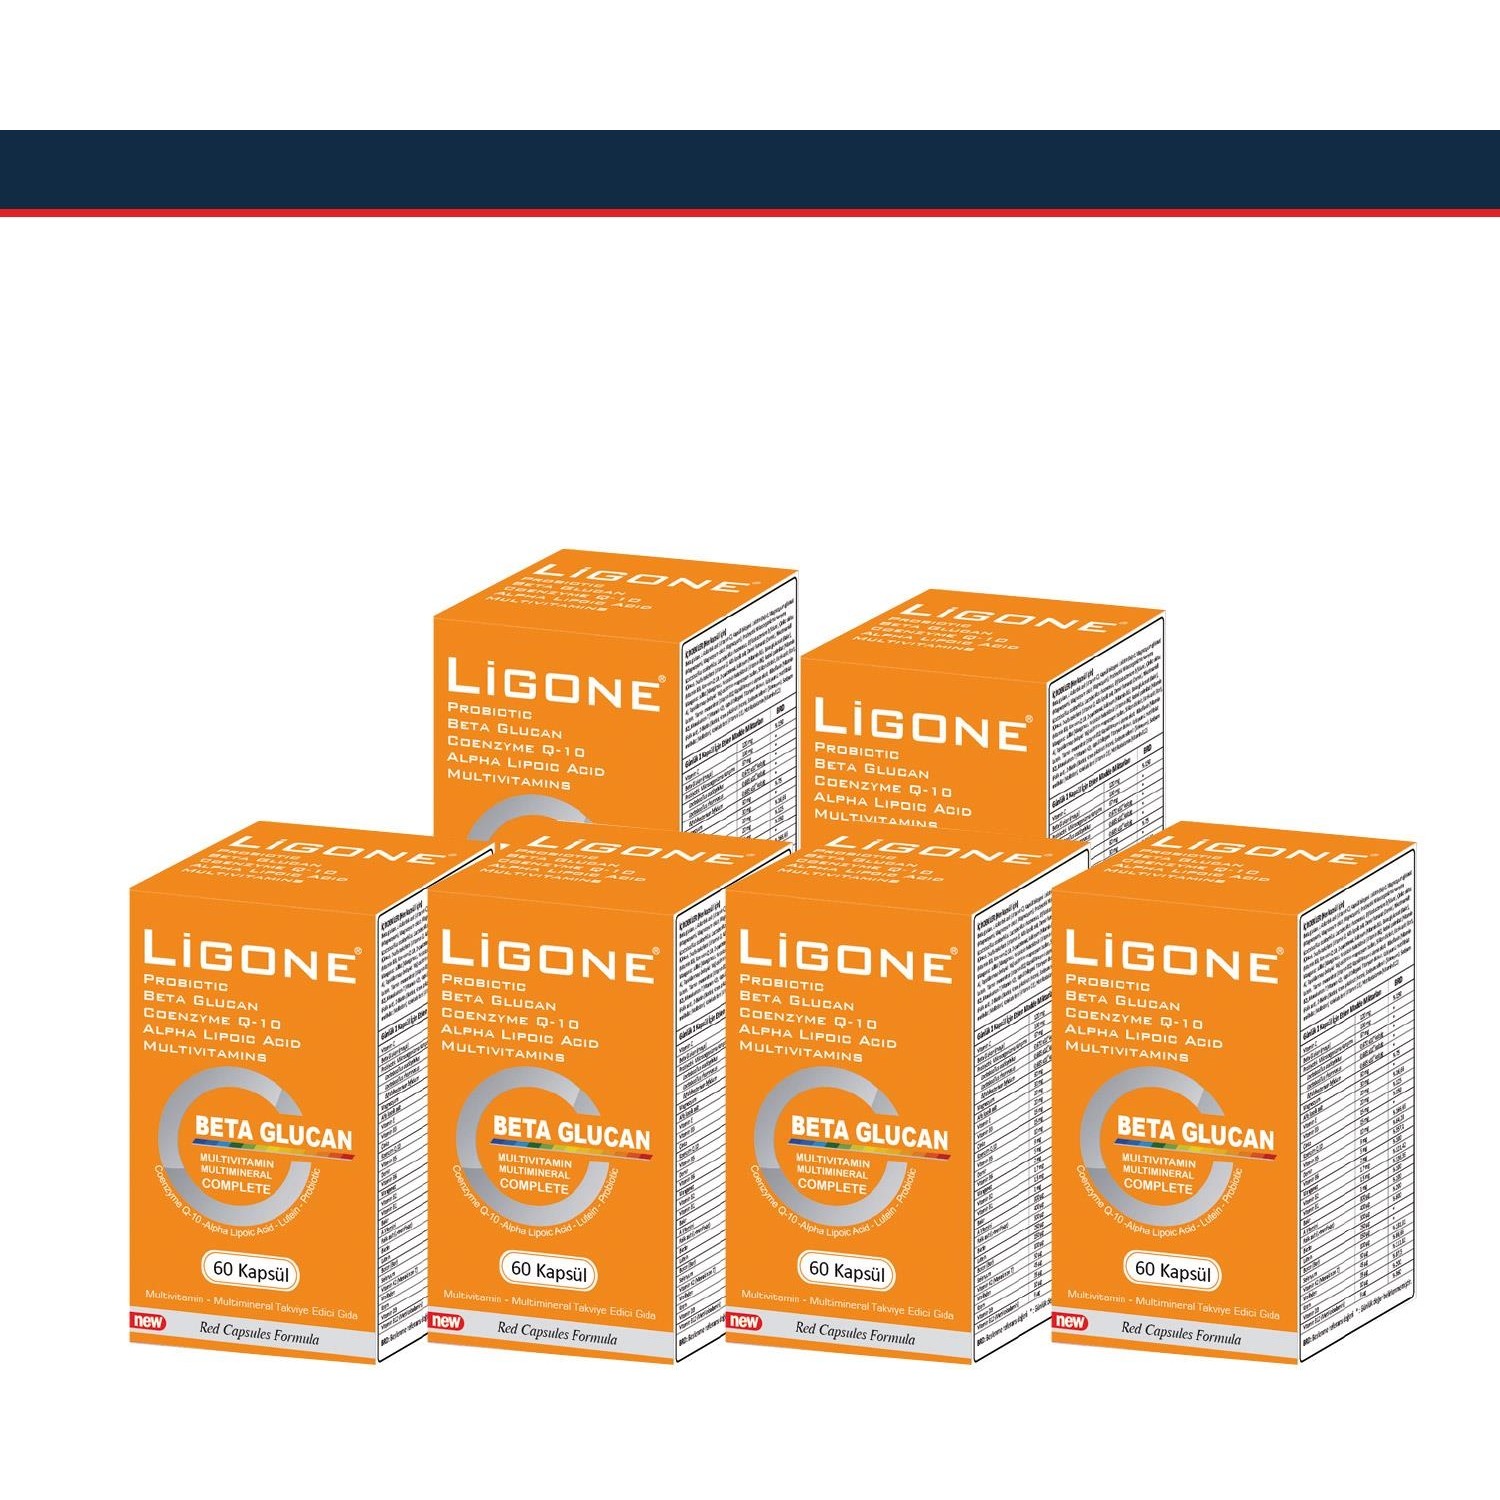 Пищевая добавка Newdrog Ligone Beta Glucan, 60 капсул 6 шт